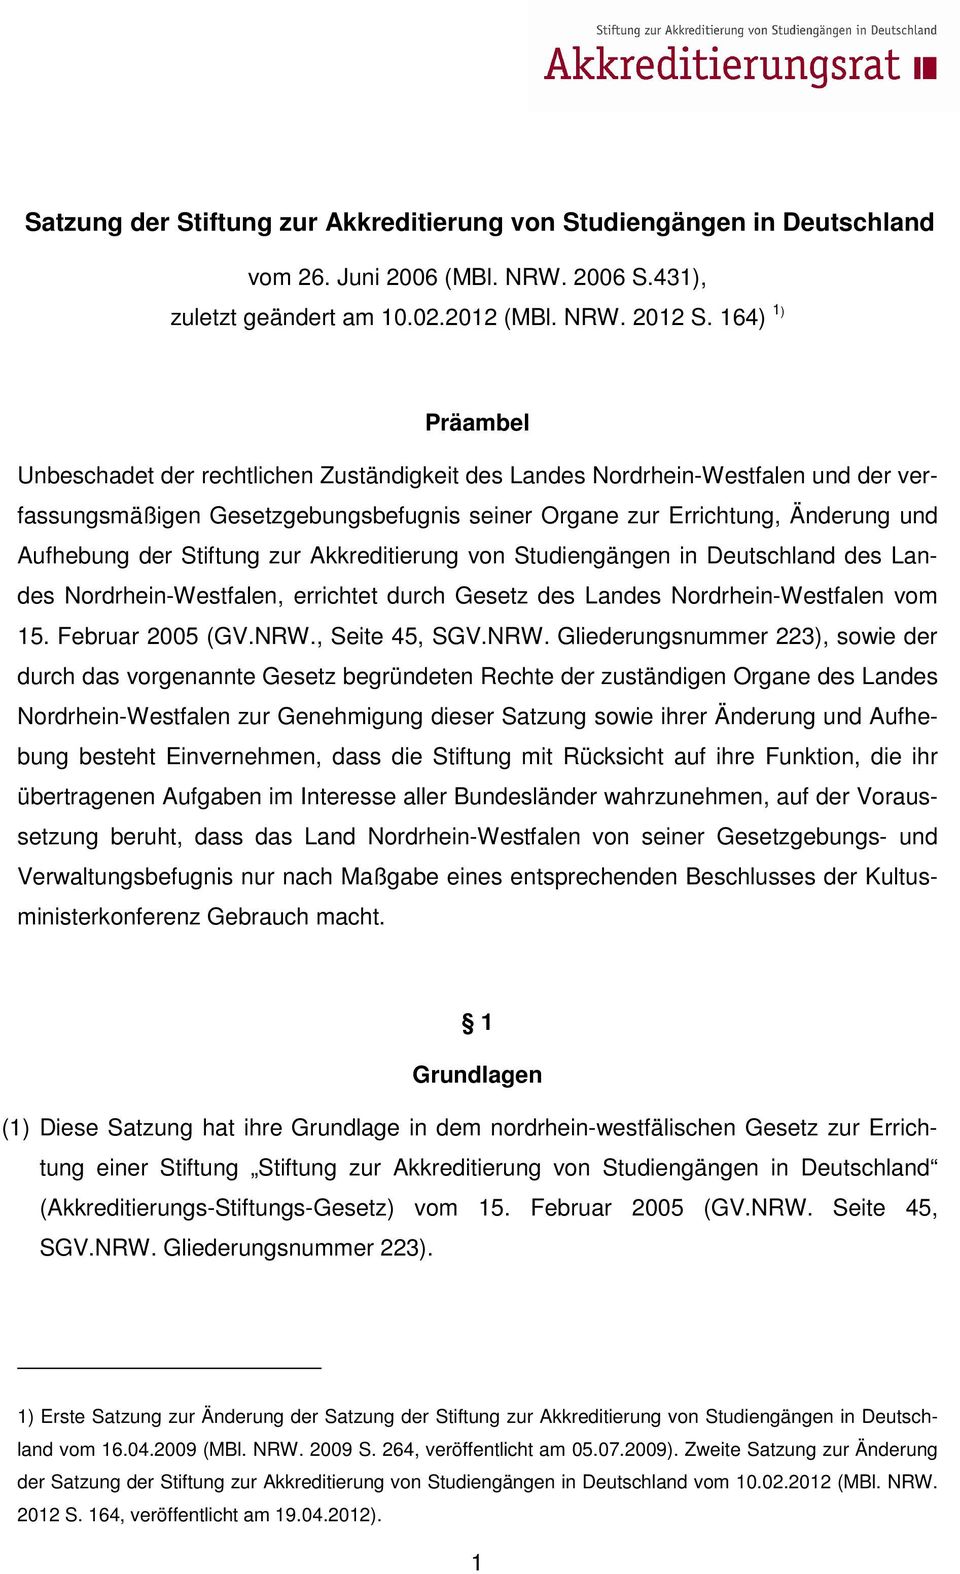 Stiftung zur Akkreditierung von Studiengängen in Deutschland des Landes Nordrhein-Westfalen, errichtet durch Gesetz des Landes Nordrhein-Westfalen vom 15. Februar 2005 (GV.NRW.